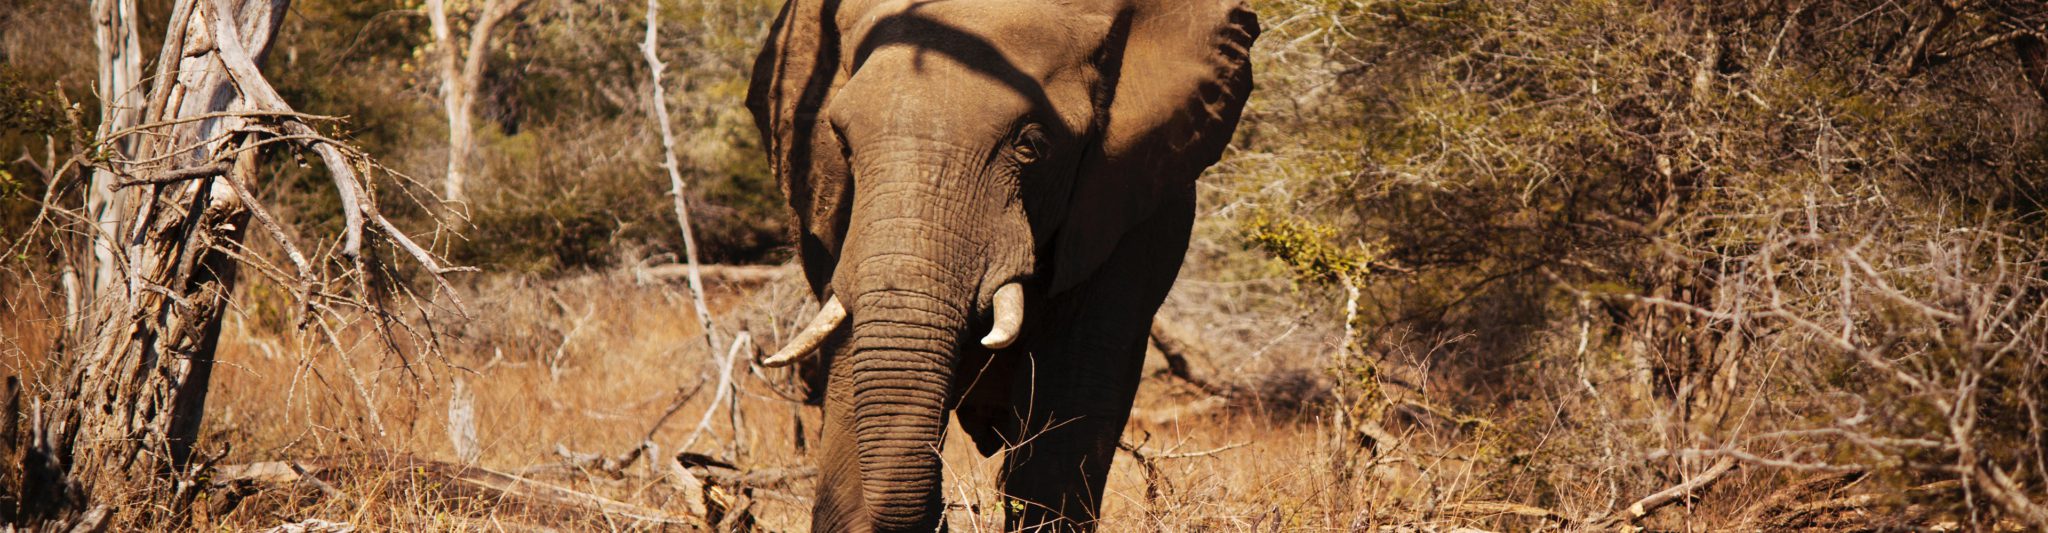 Zuid-Afrika olifant-kruger-park